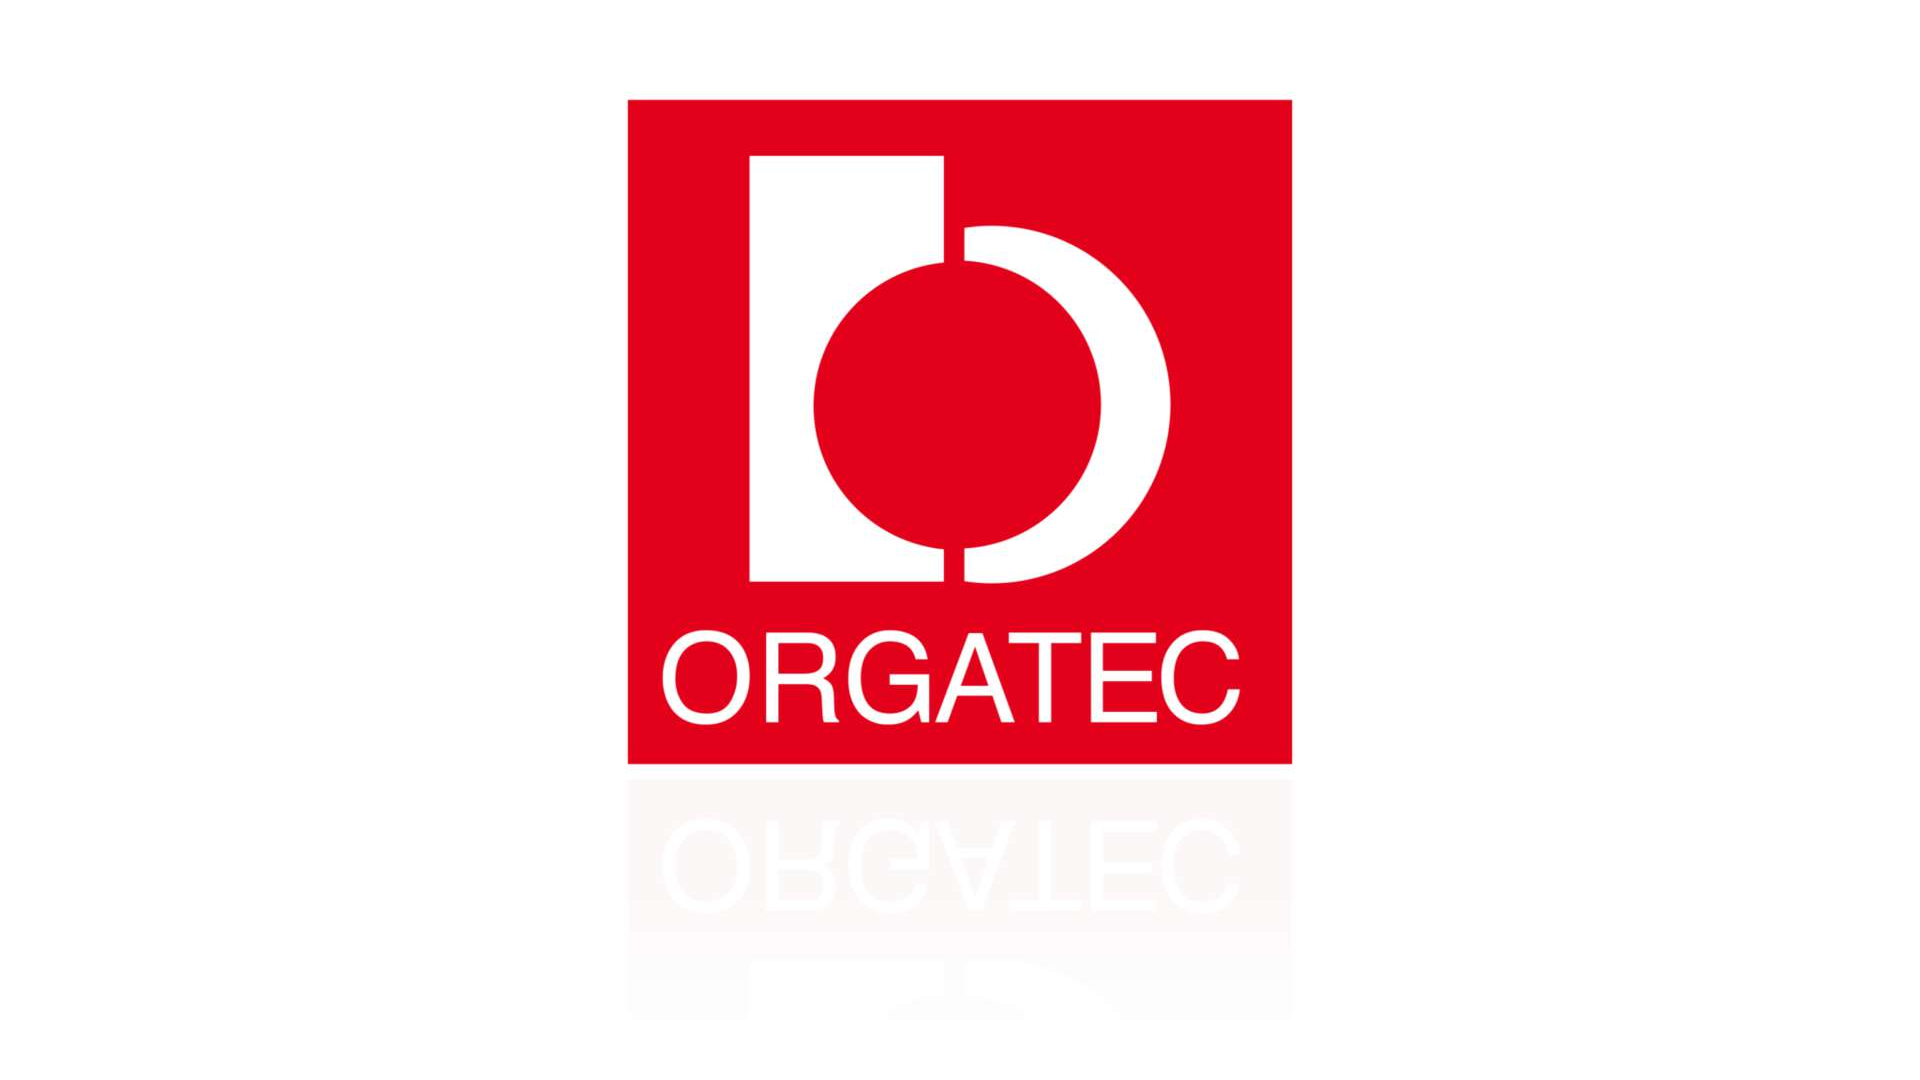 Logo der Orgatec, eine Leitmesse für moderne Arbeitswelten.  1:1-Nachbau des Logos durch VBG für die eigene Website, da die Originalvorlage eine Pixeldatei mit geringer Auflösung war.